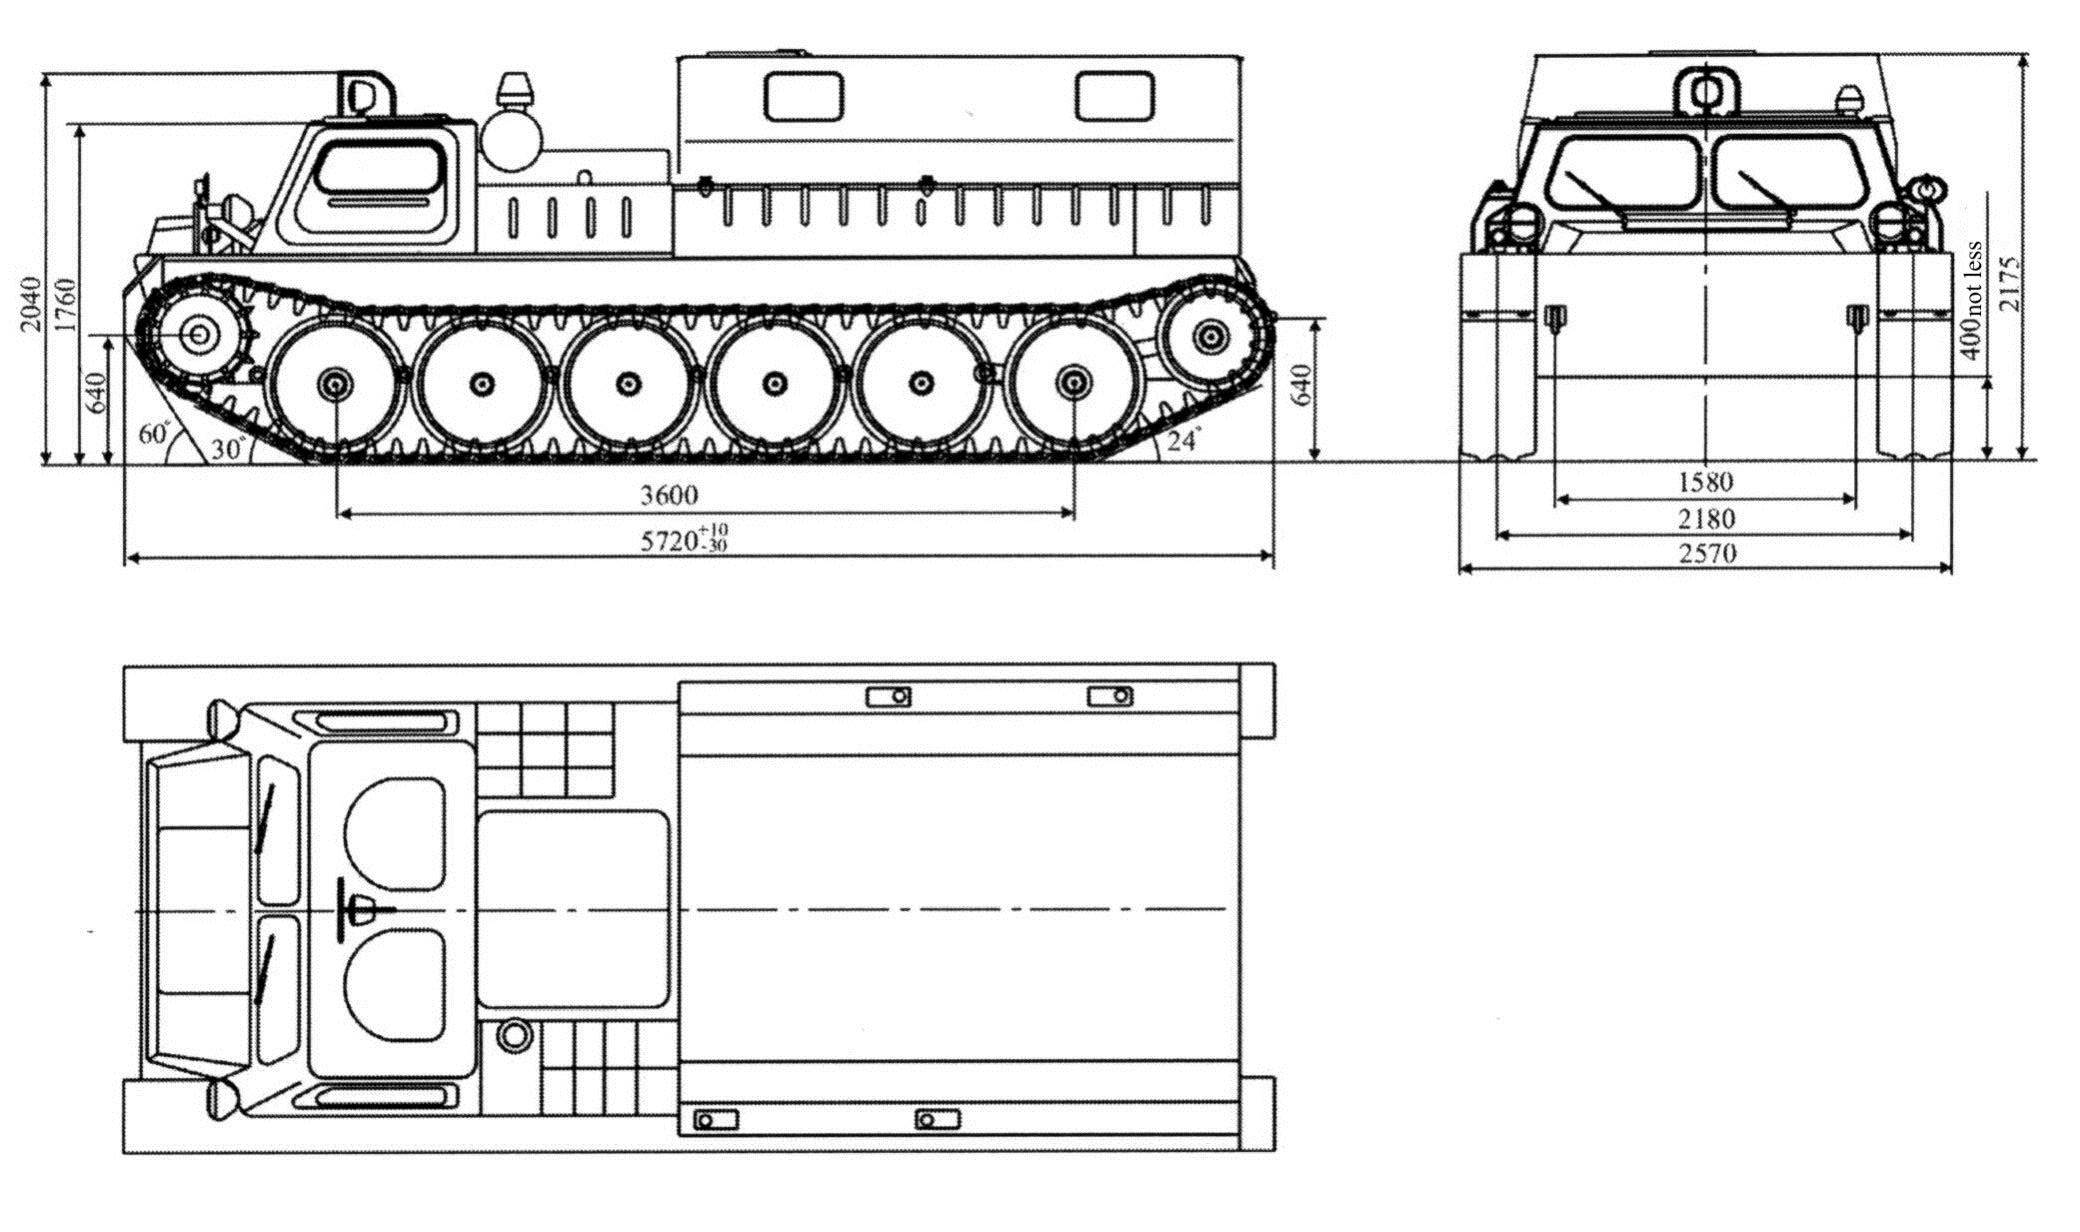 Вездеход бобр газ-3409 ✅: снегоболотоход, гусеничный болотоход с прицепом, пусковой обогреватель, схема, технические характеристики